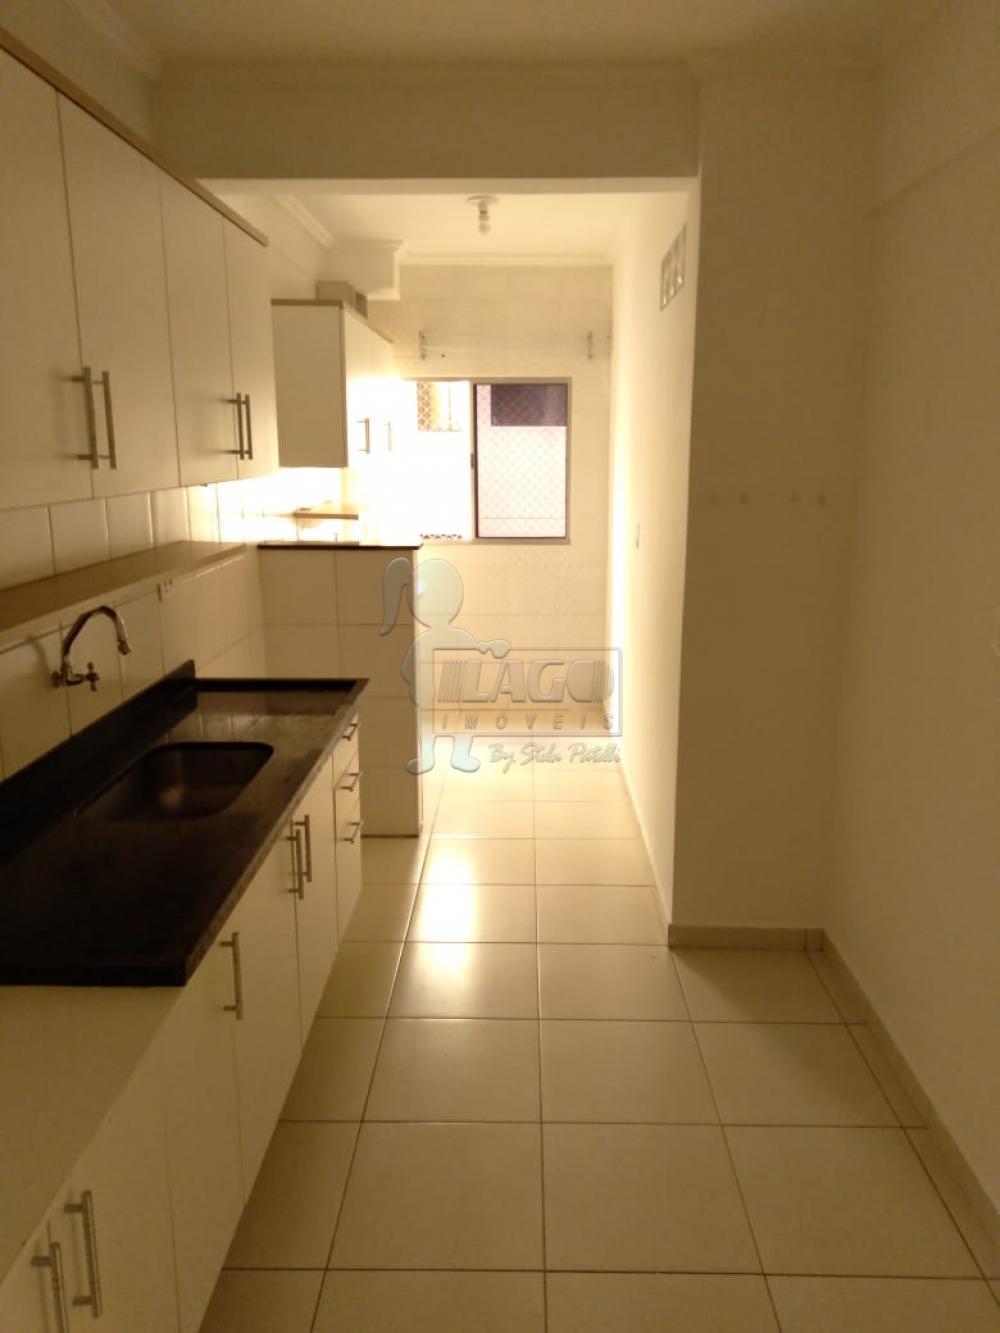 Alugar Apartamentos / Padrão em Ribeirão Preto R$ 1.300,00 - Foto 6